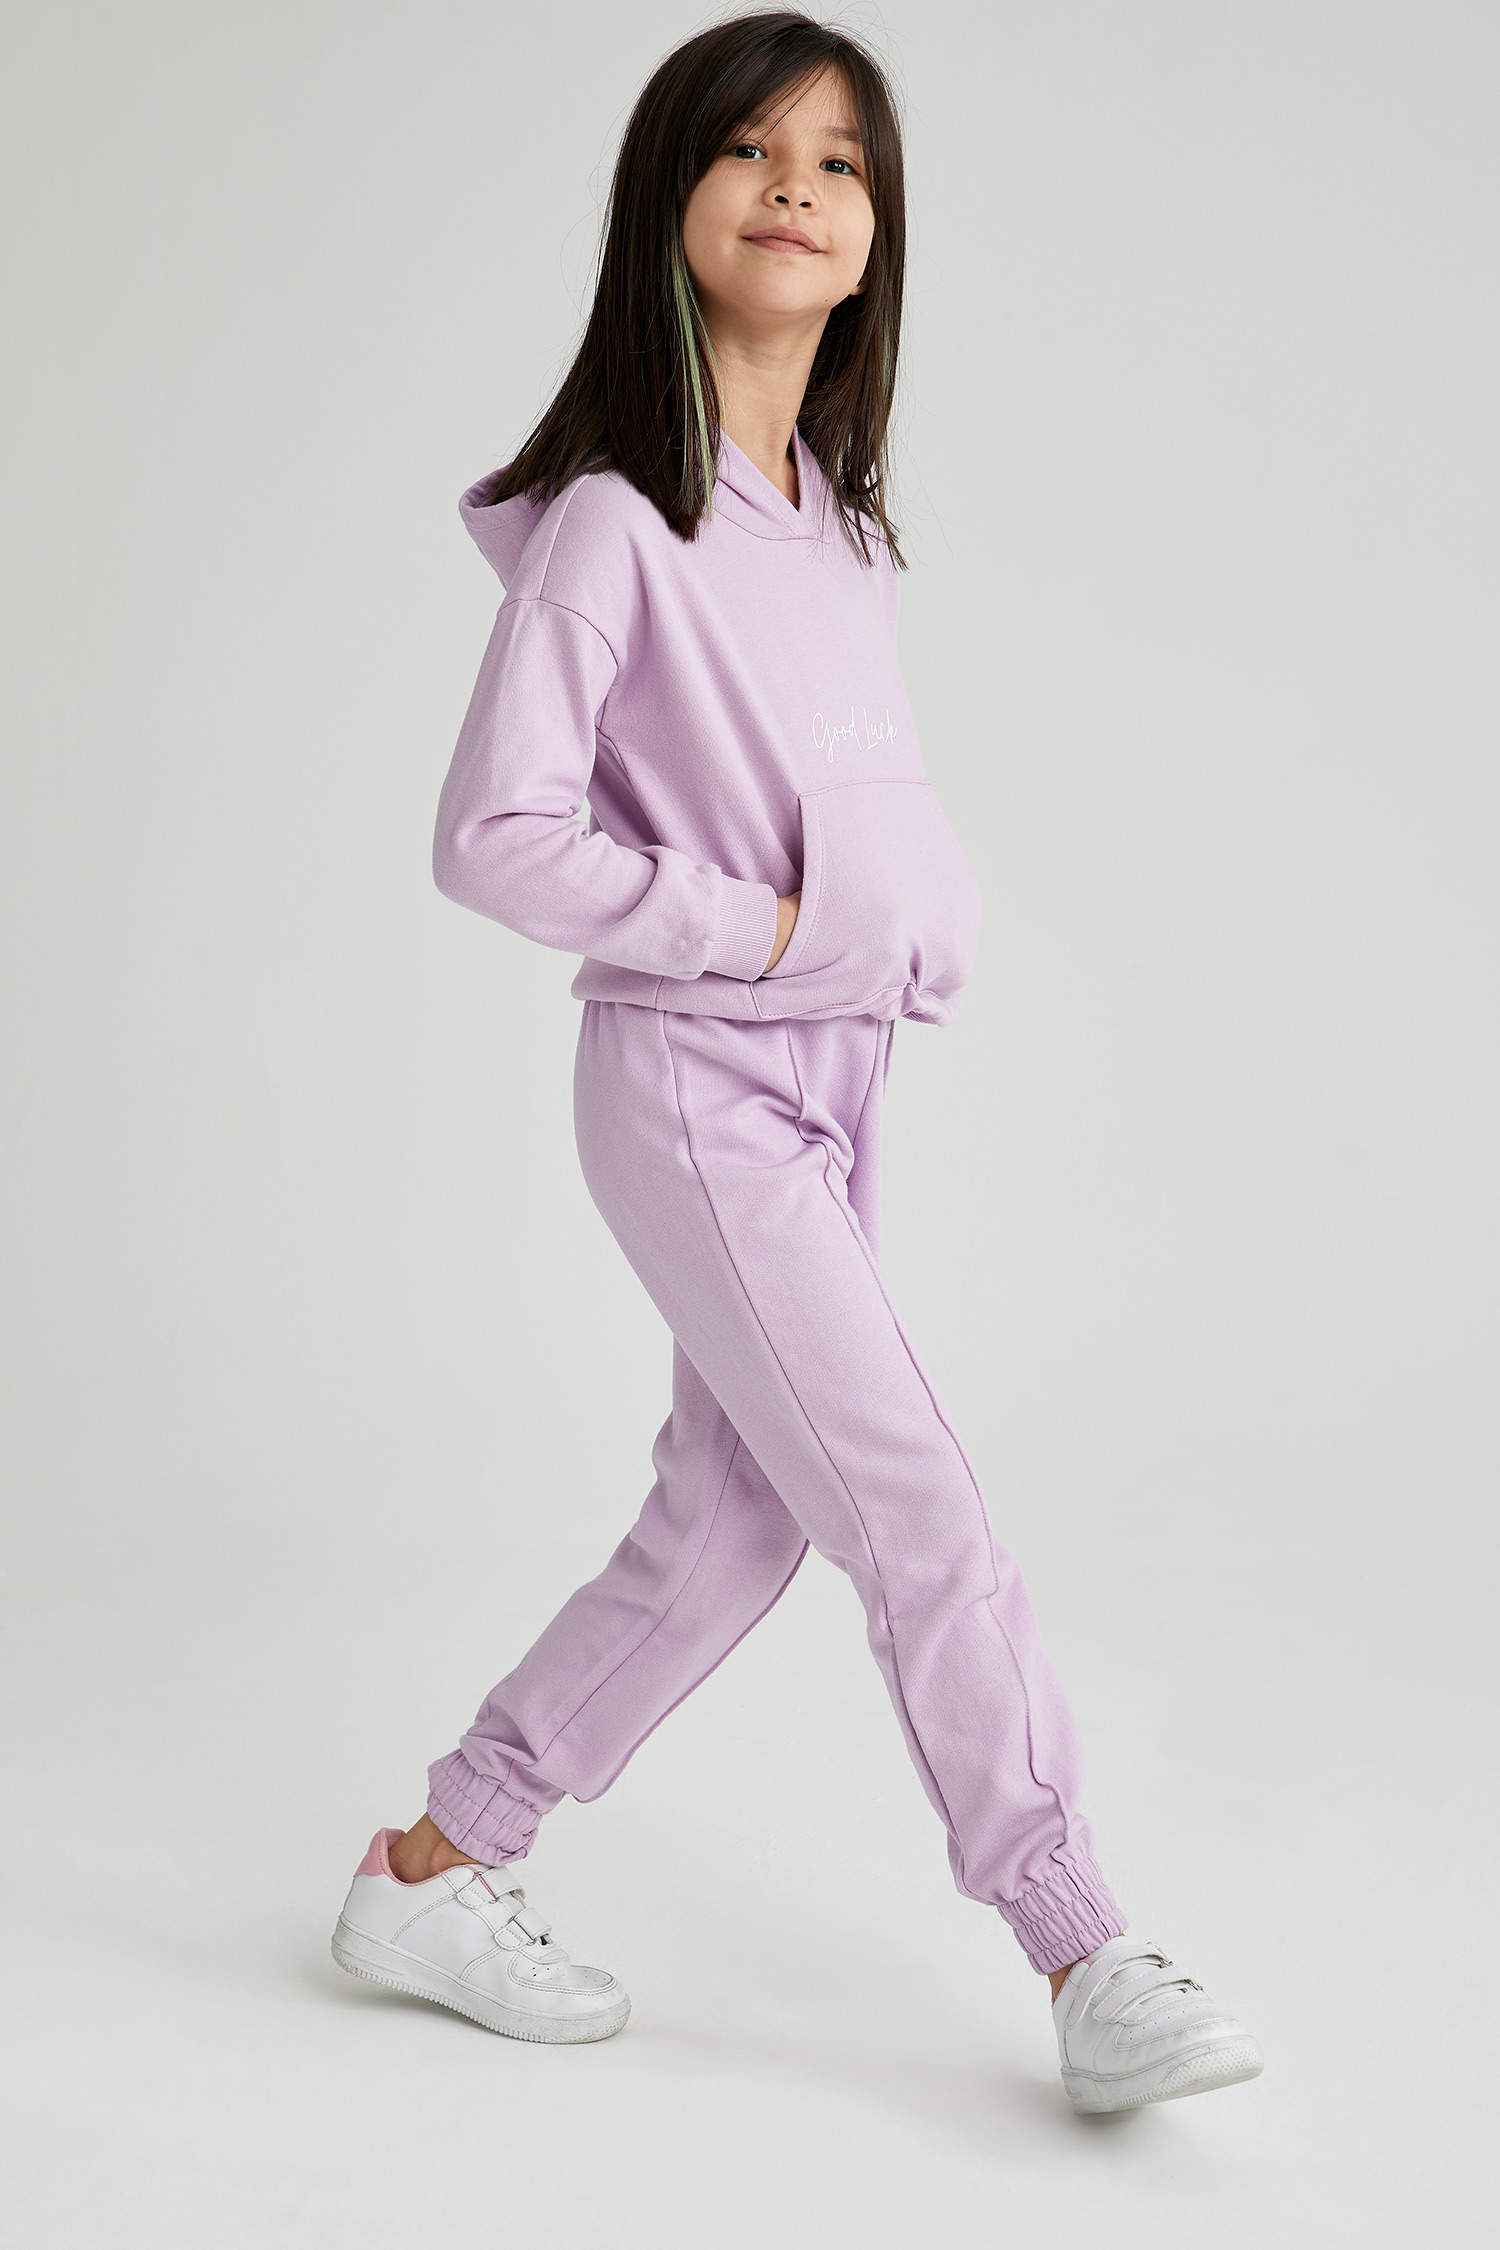 pantalon de jogging fille avec logo patine - camps united violet